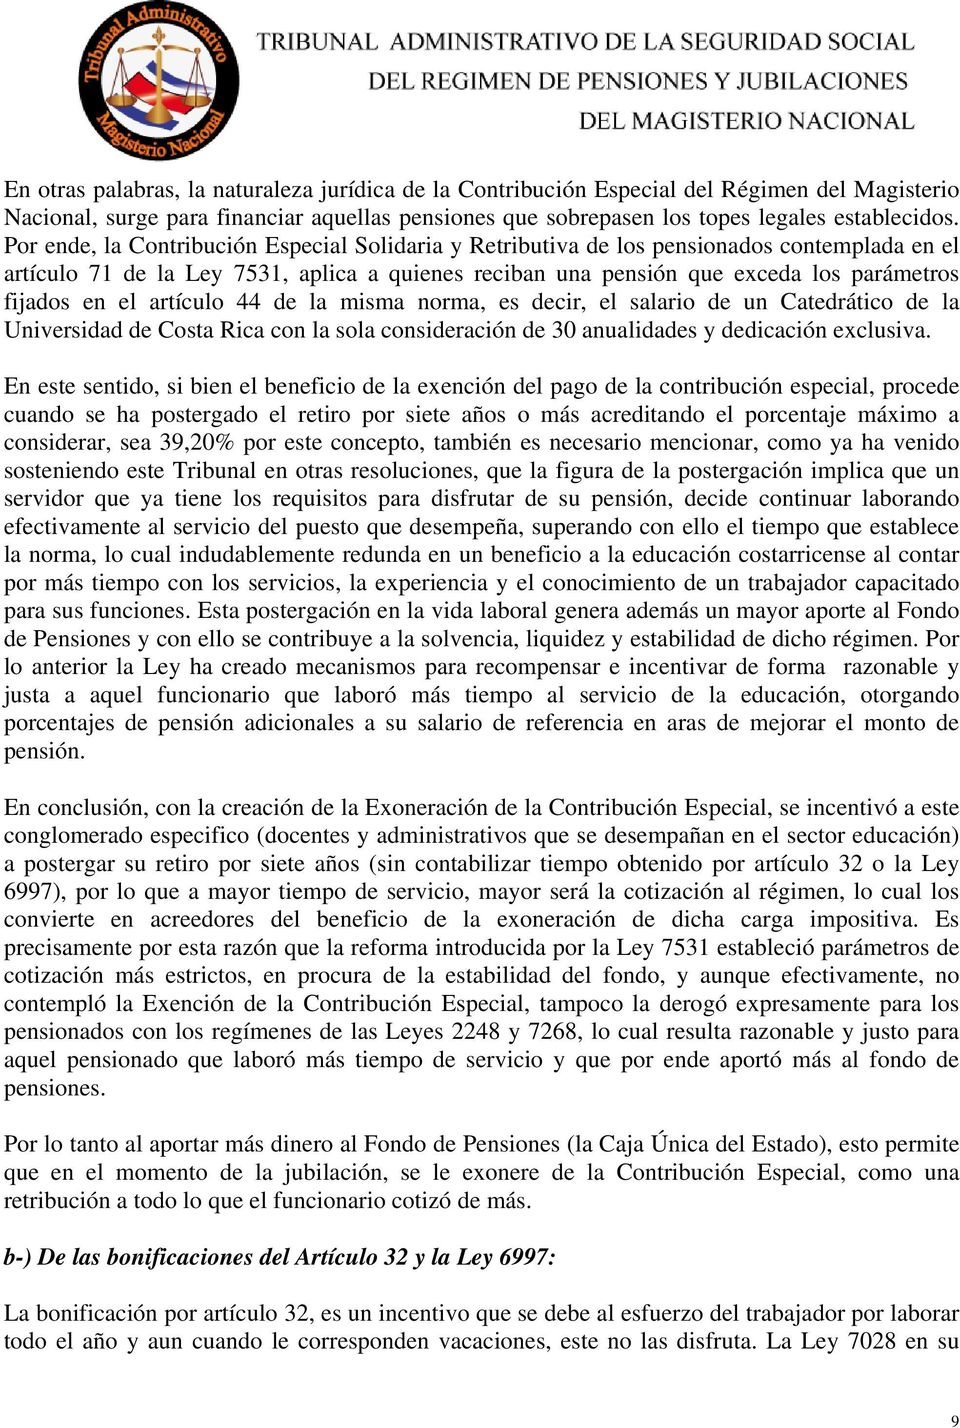 el artículo 44 de la misma norma, es decir, el salario de un Catedrático de la Universidad de Costa Rica con la sola consideración de 30 anualidades y dedicación exclusiva.